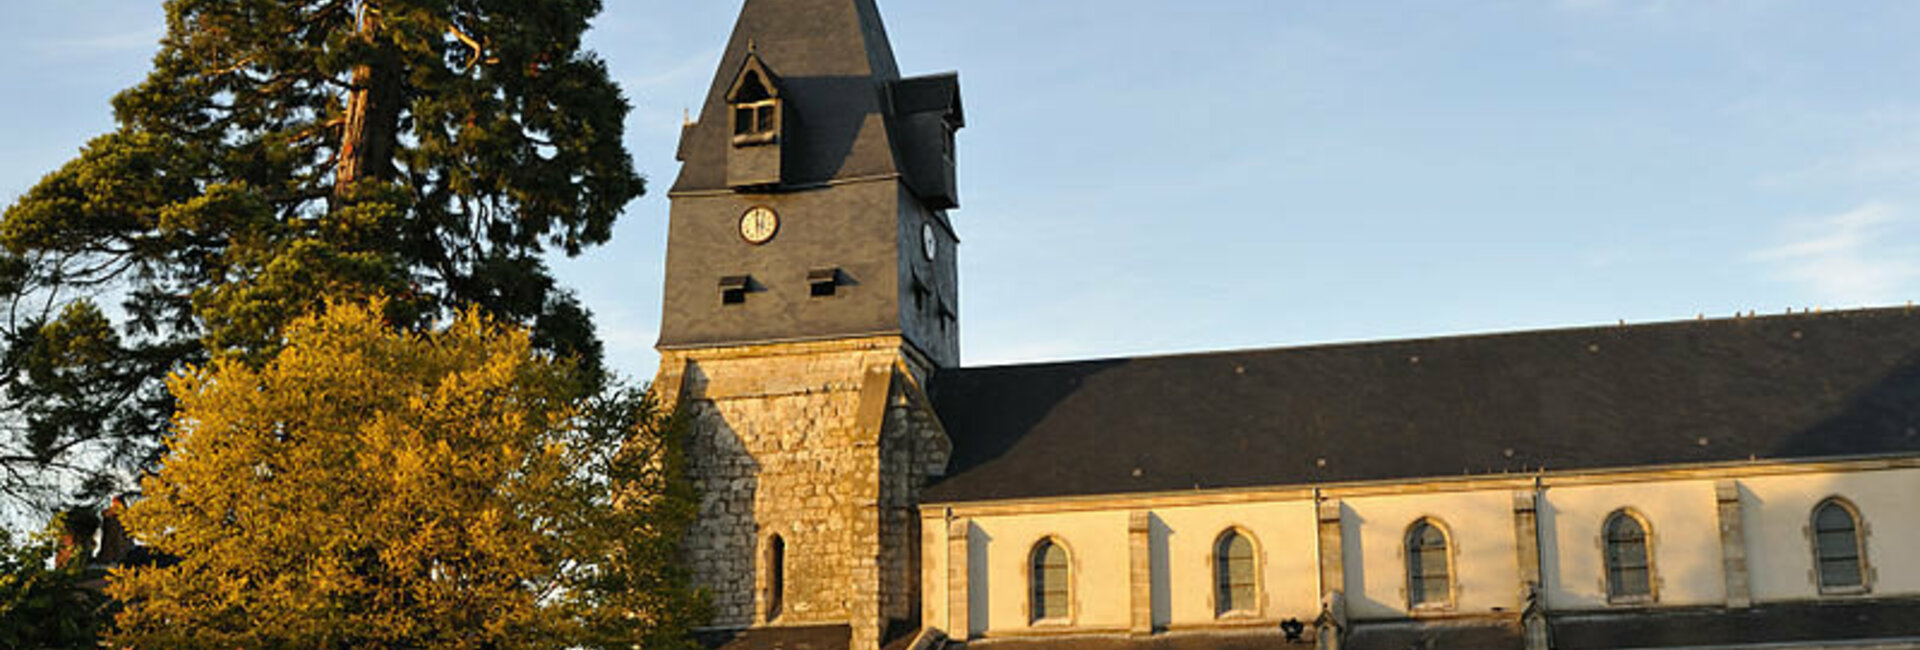 Les mentions légales du site de Aschères-le-Marché (45) Loiret